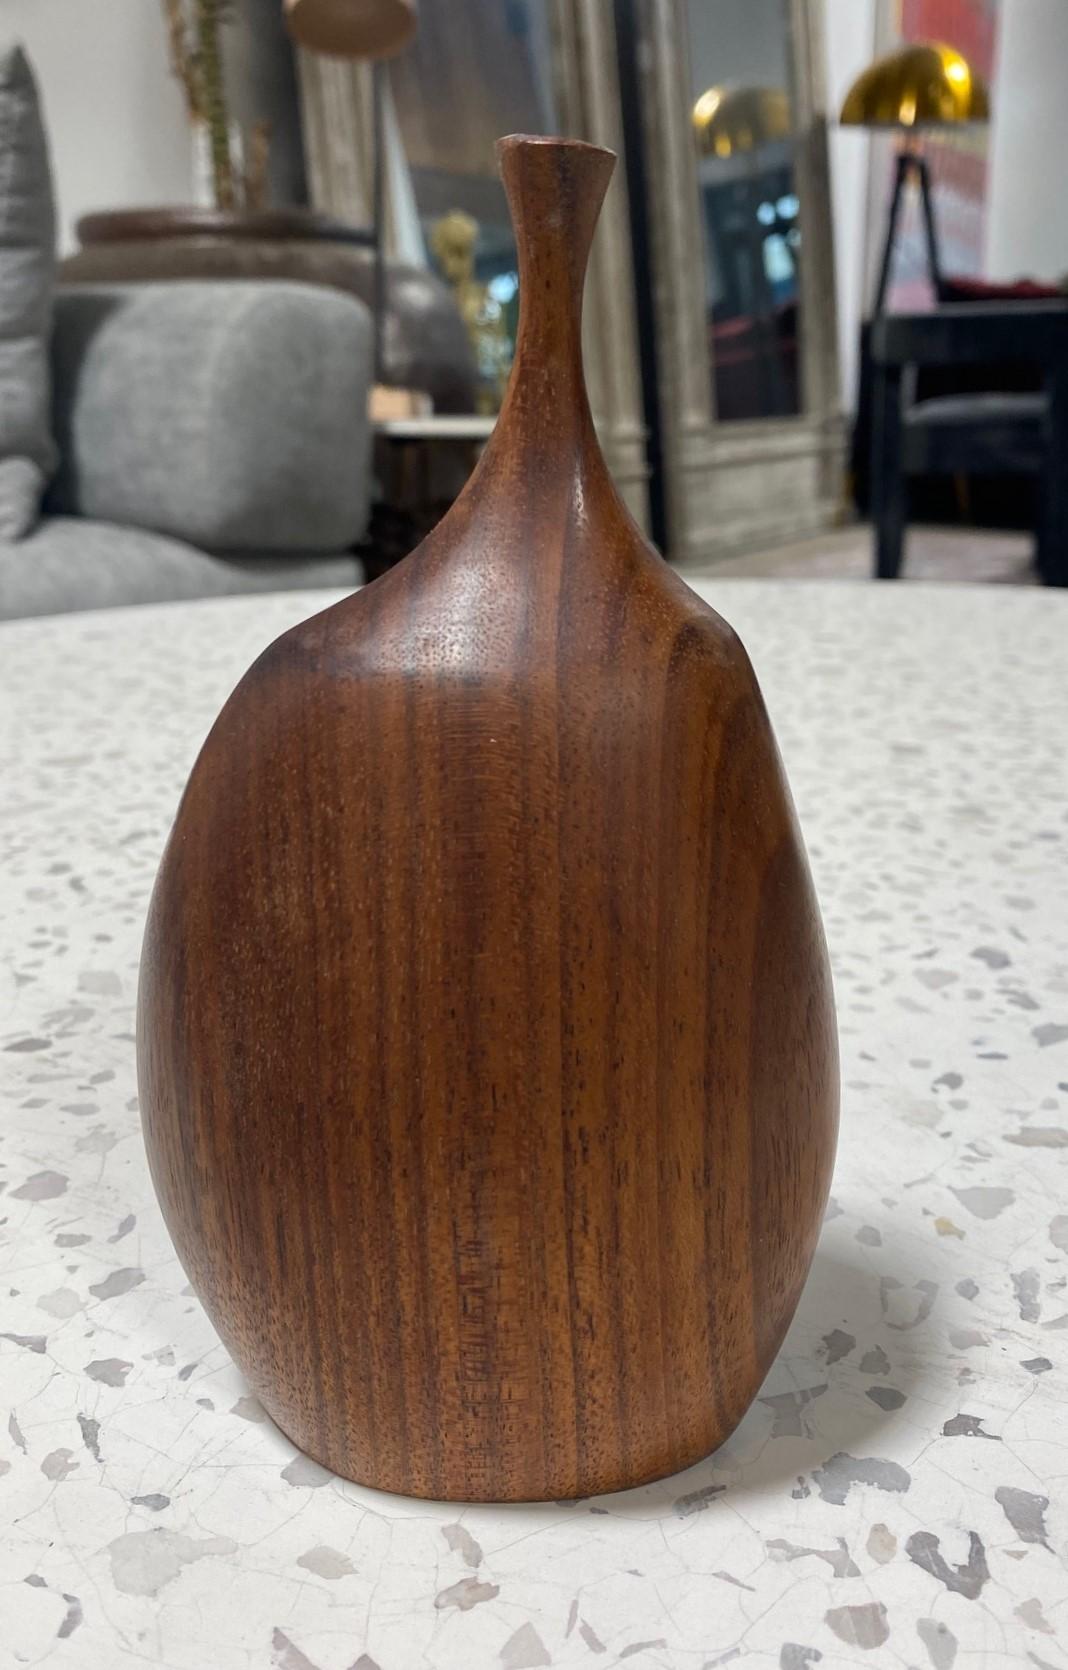 Eine sehr schön gearbeitete und geschnitzte Vase aus Holz von dem famosen amerikanischen (Mendocino, CA) Künstler/Bildhauer Doug Ayers. Die natürliche, organische Maserung des Holzes ist bei diesem Stück besonders spektakulär. 

Signiert von Ayers